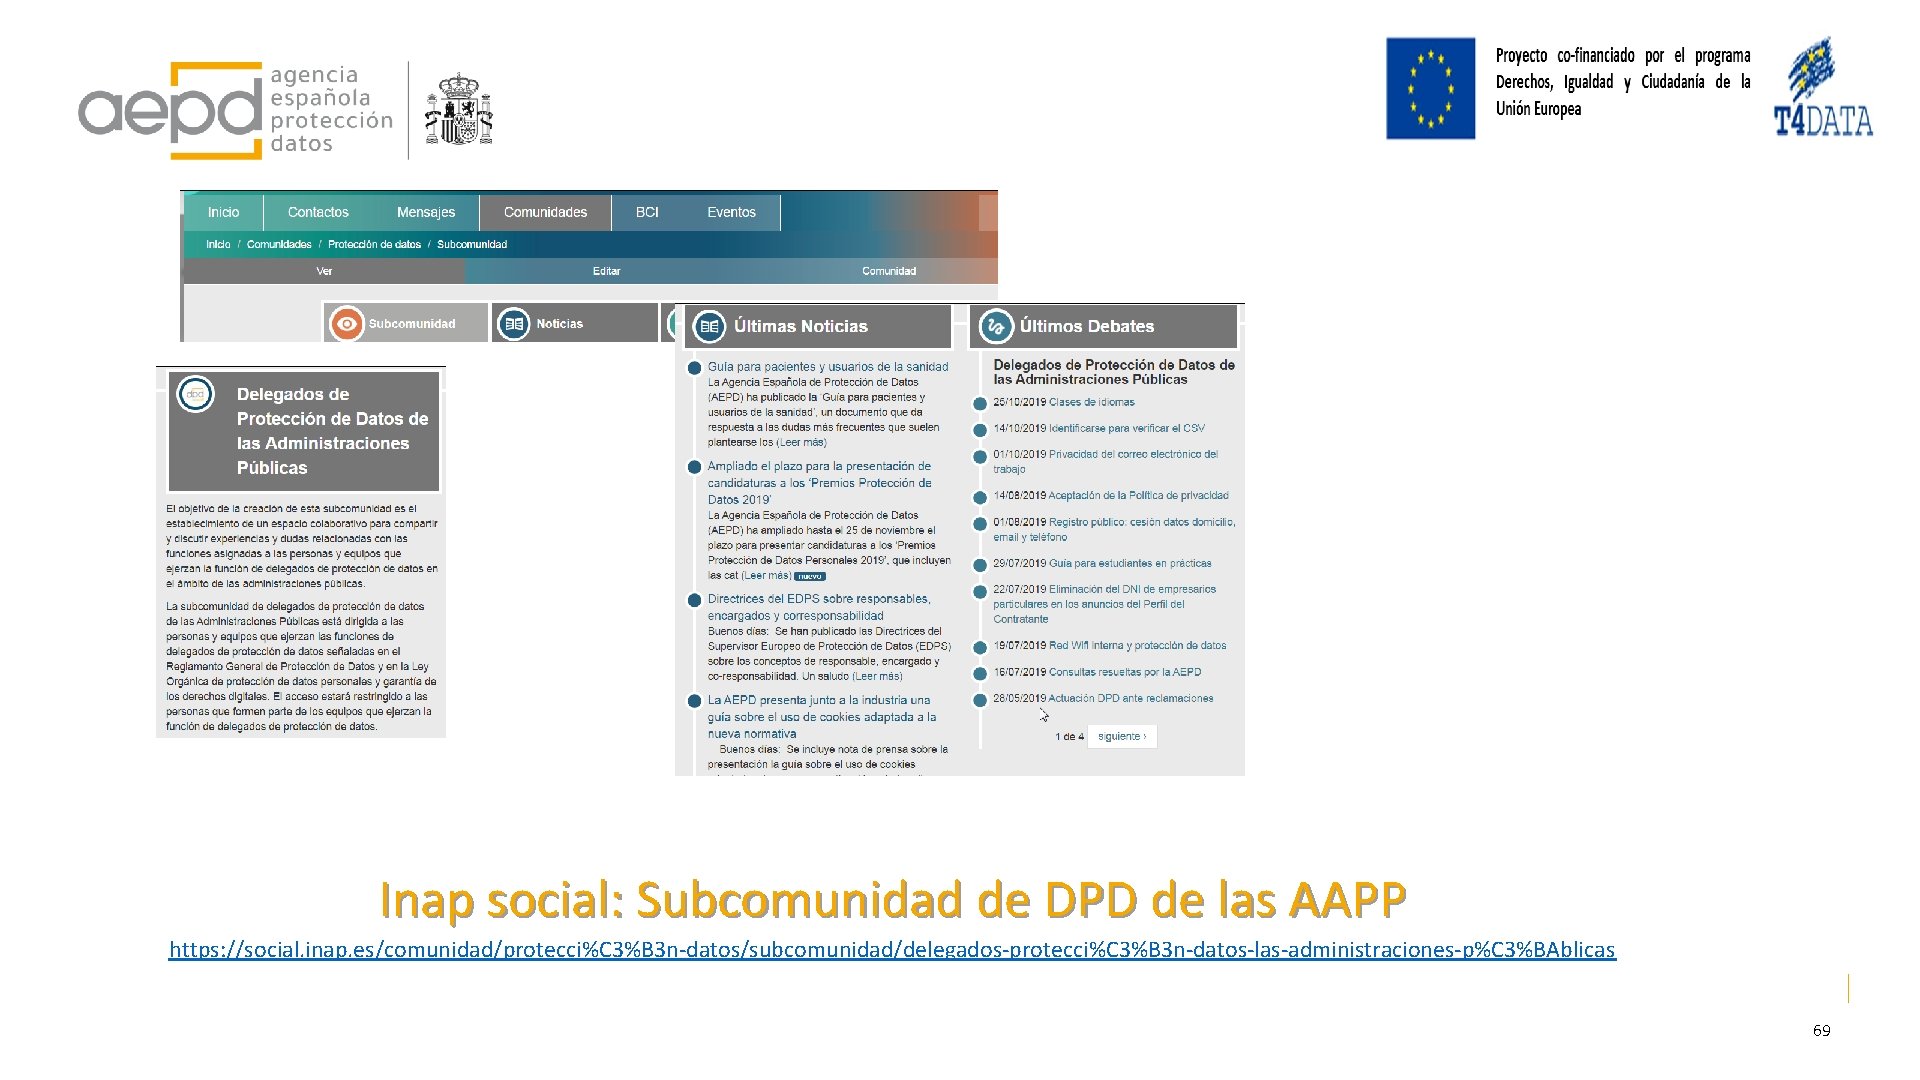 Inap social: Subcomunidad de DPD de las AAPP https: //social. inap. es/comunidad/protecci%C 3%B 3